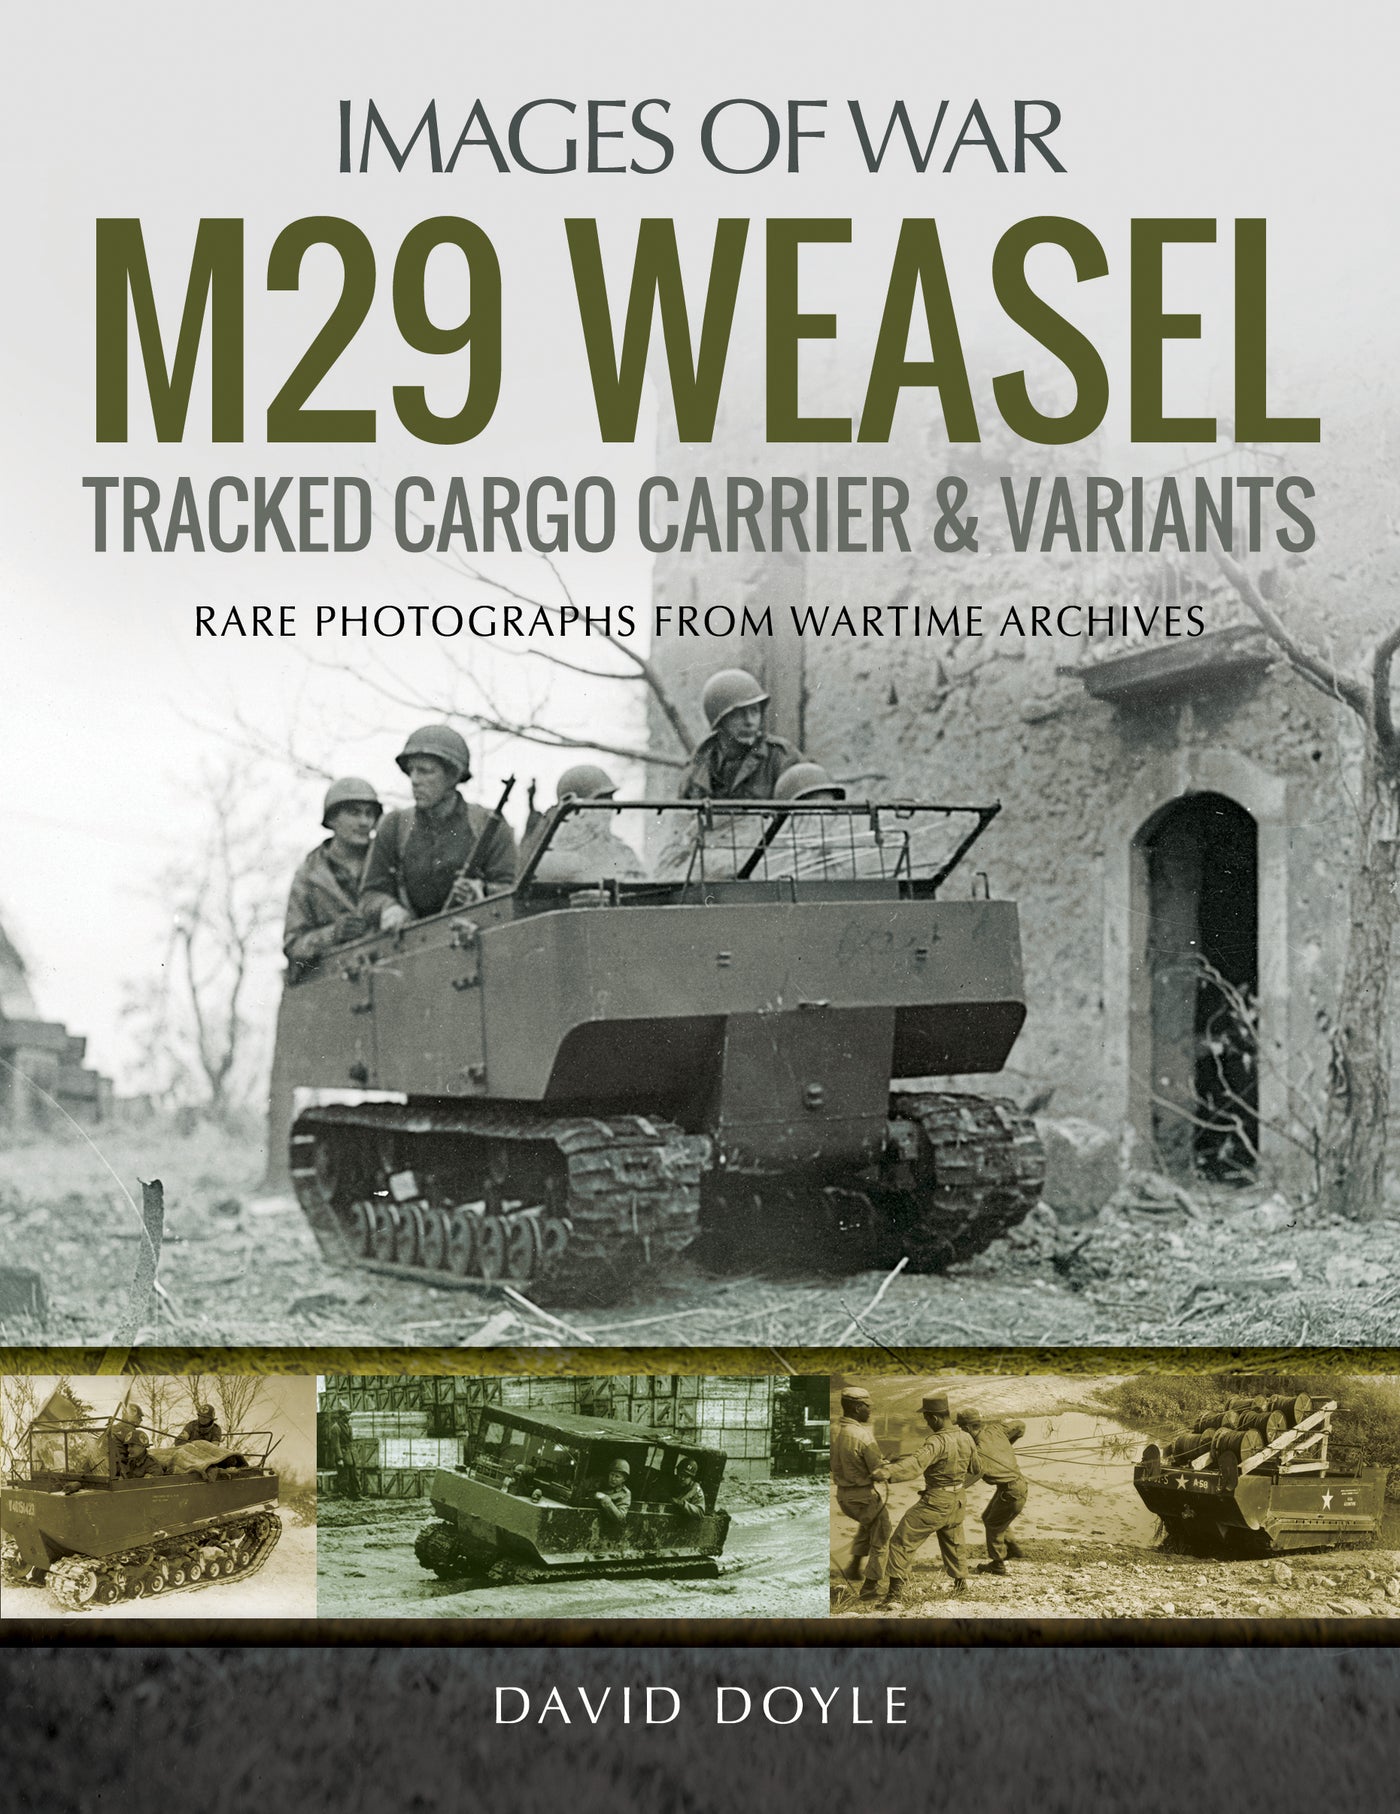 Kettenfrachter M29 Weasel und Varianten 